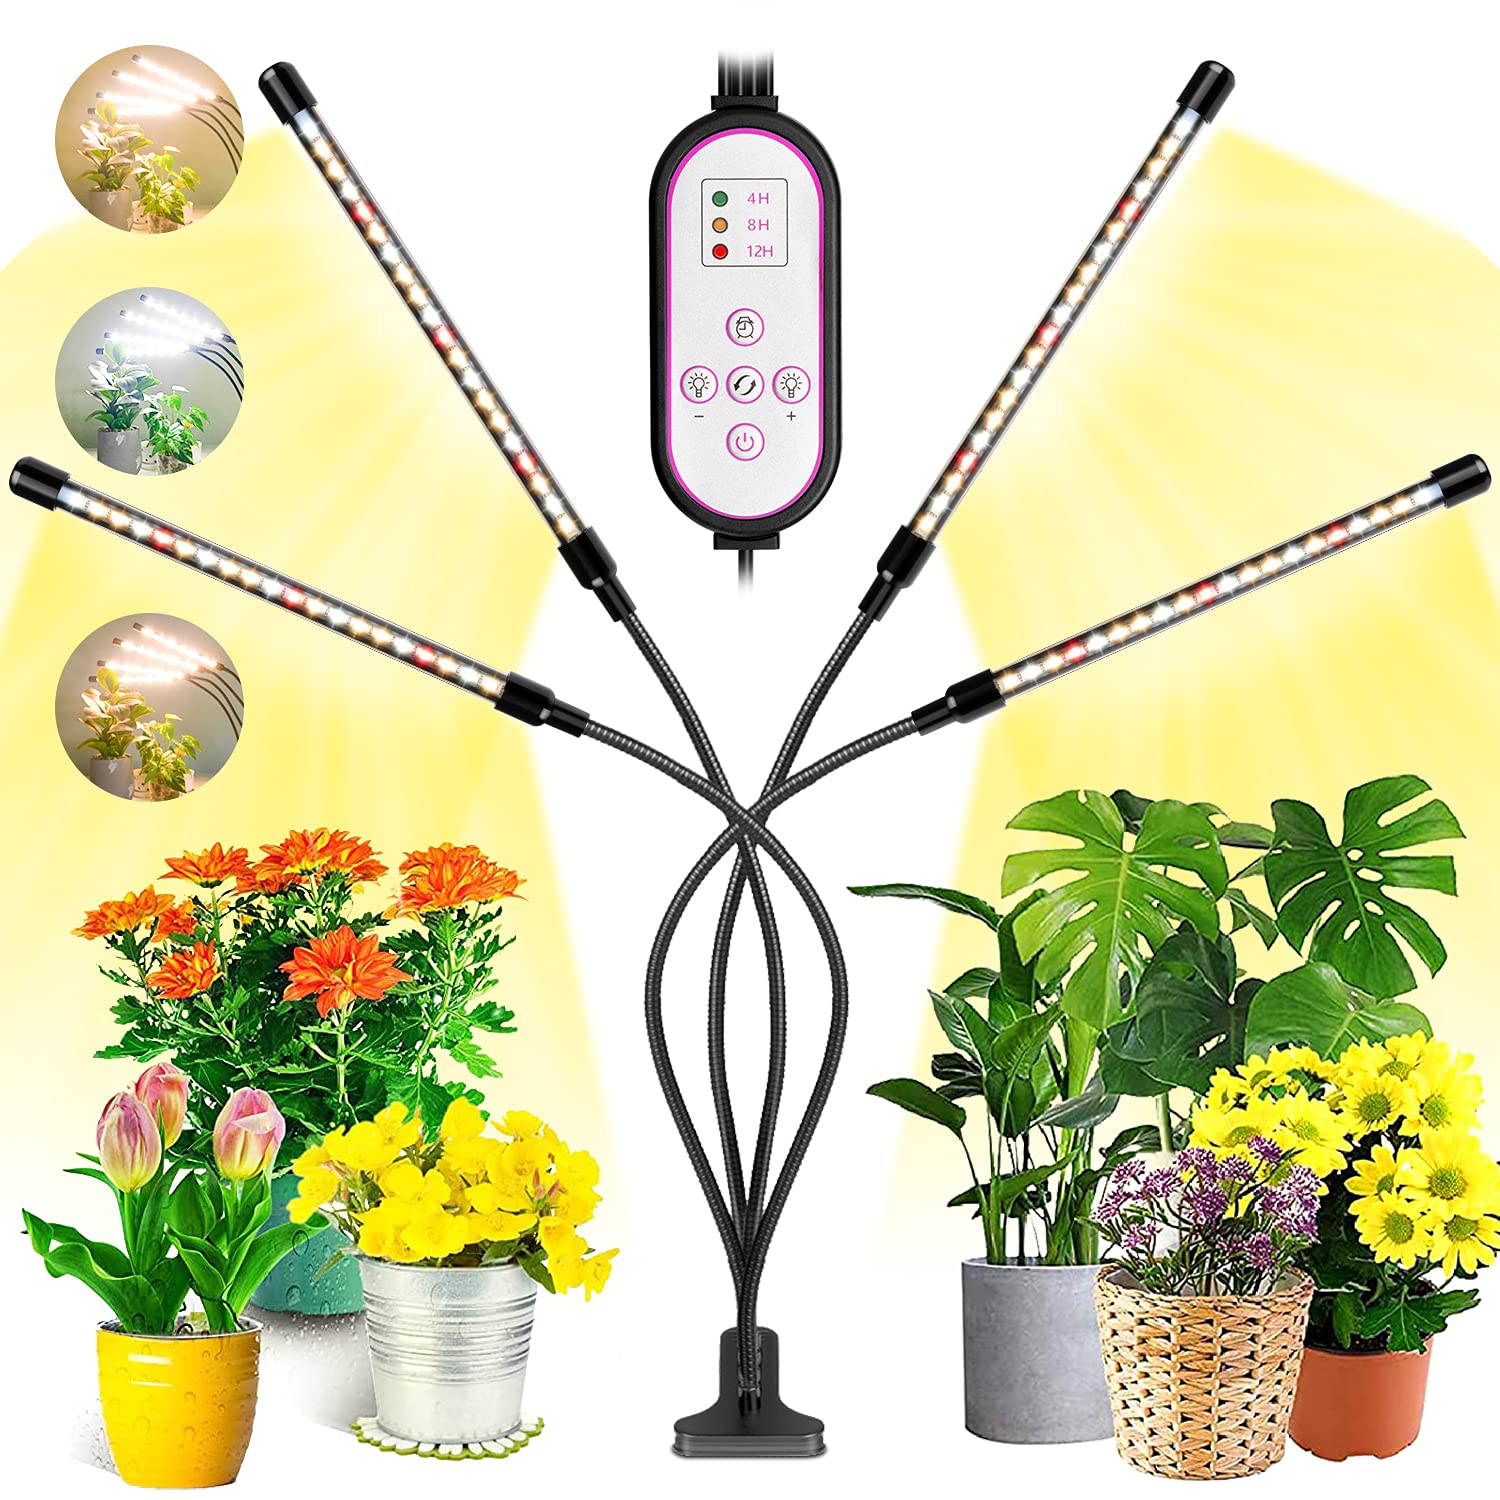 Pflanzenlampe Led, Garpsen 80 LEDs Grow Lampe, 4 Heads Vollspektrum Led Pflanzenlicht für Zimmerpflanzen mit Auto ON & Off Timer 4/8/12H, 3 Arten von Modus, 10 Helligkeitsstufen